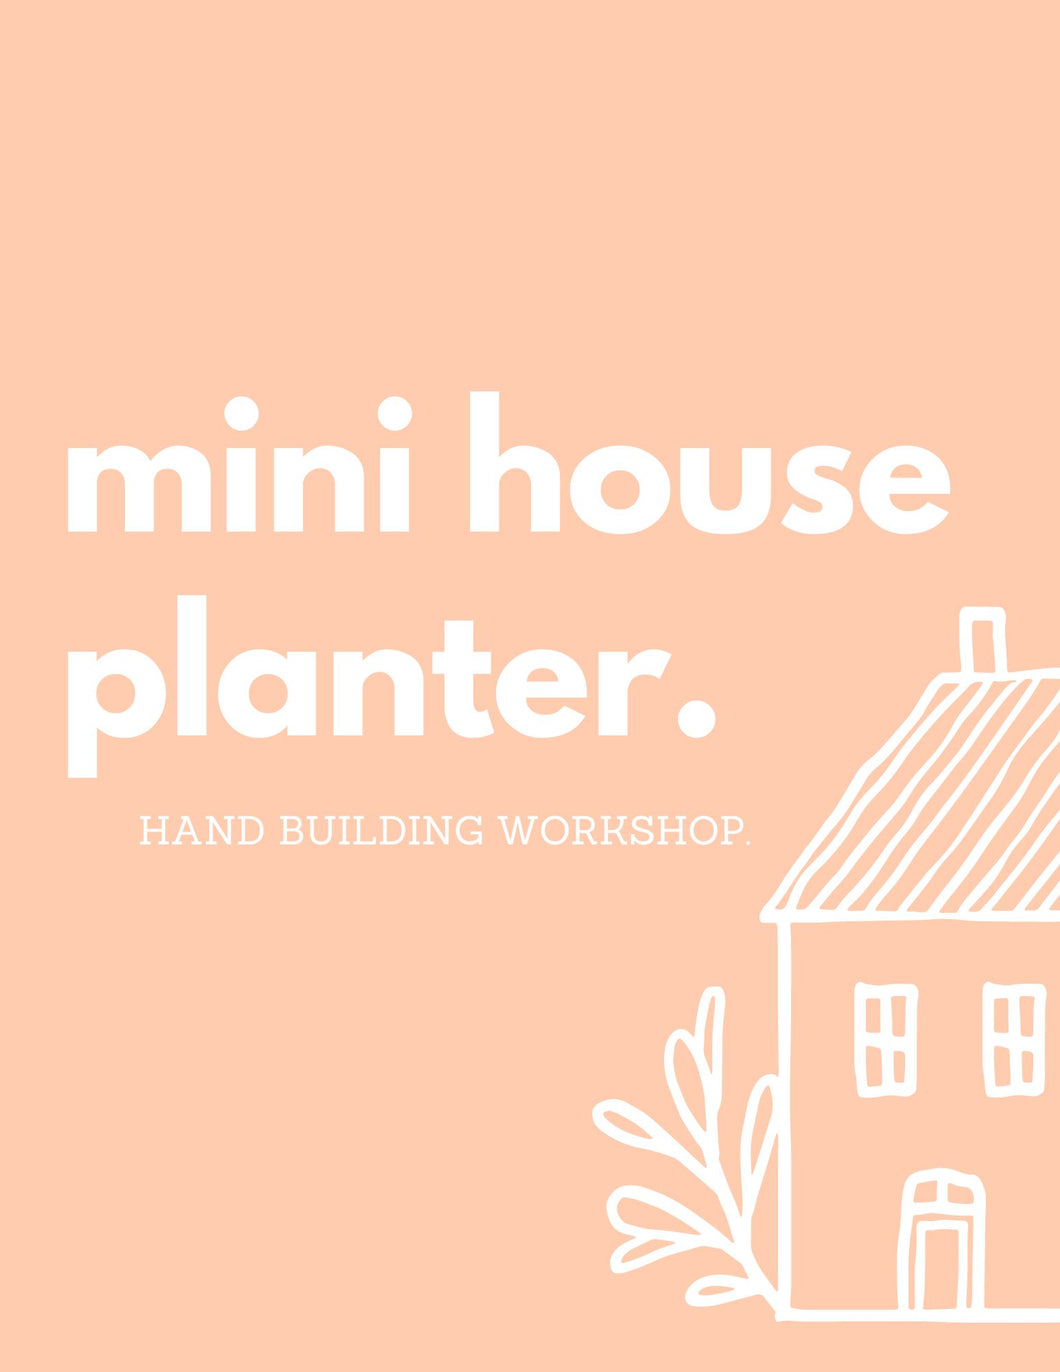 Mini House Planter | Hand Building Workshop